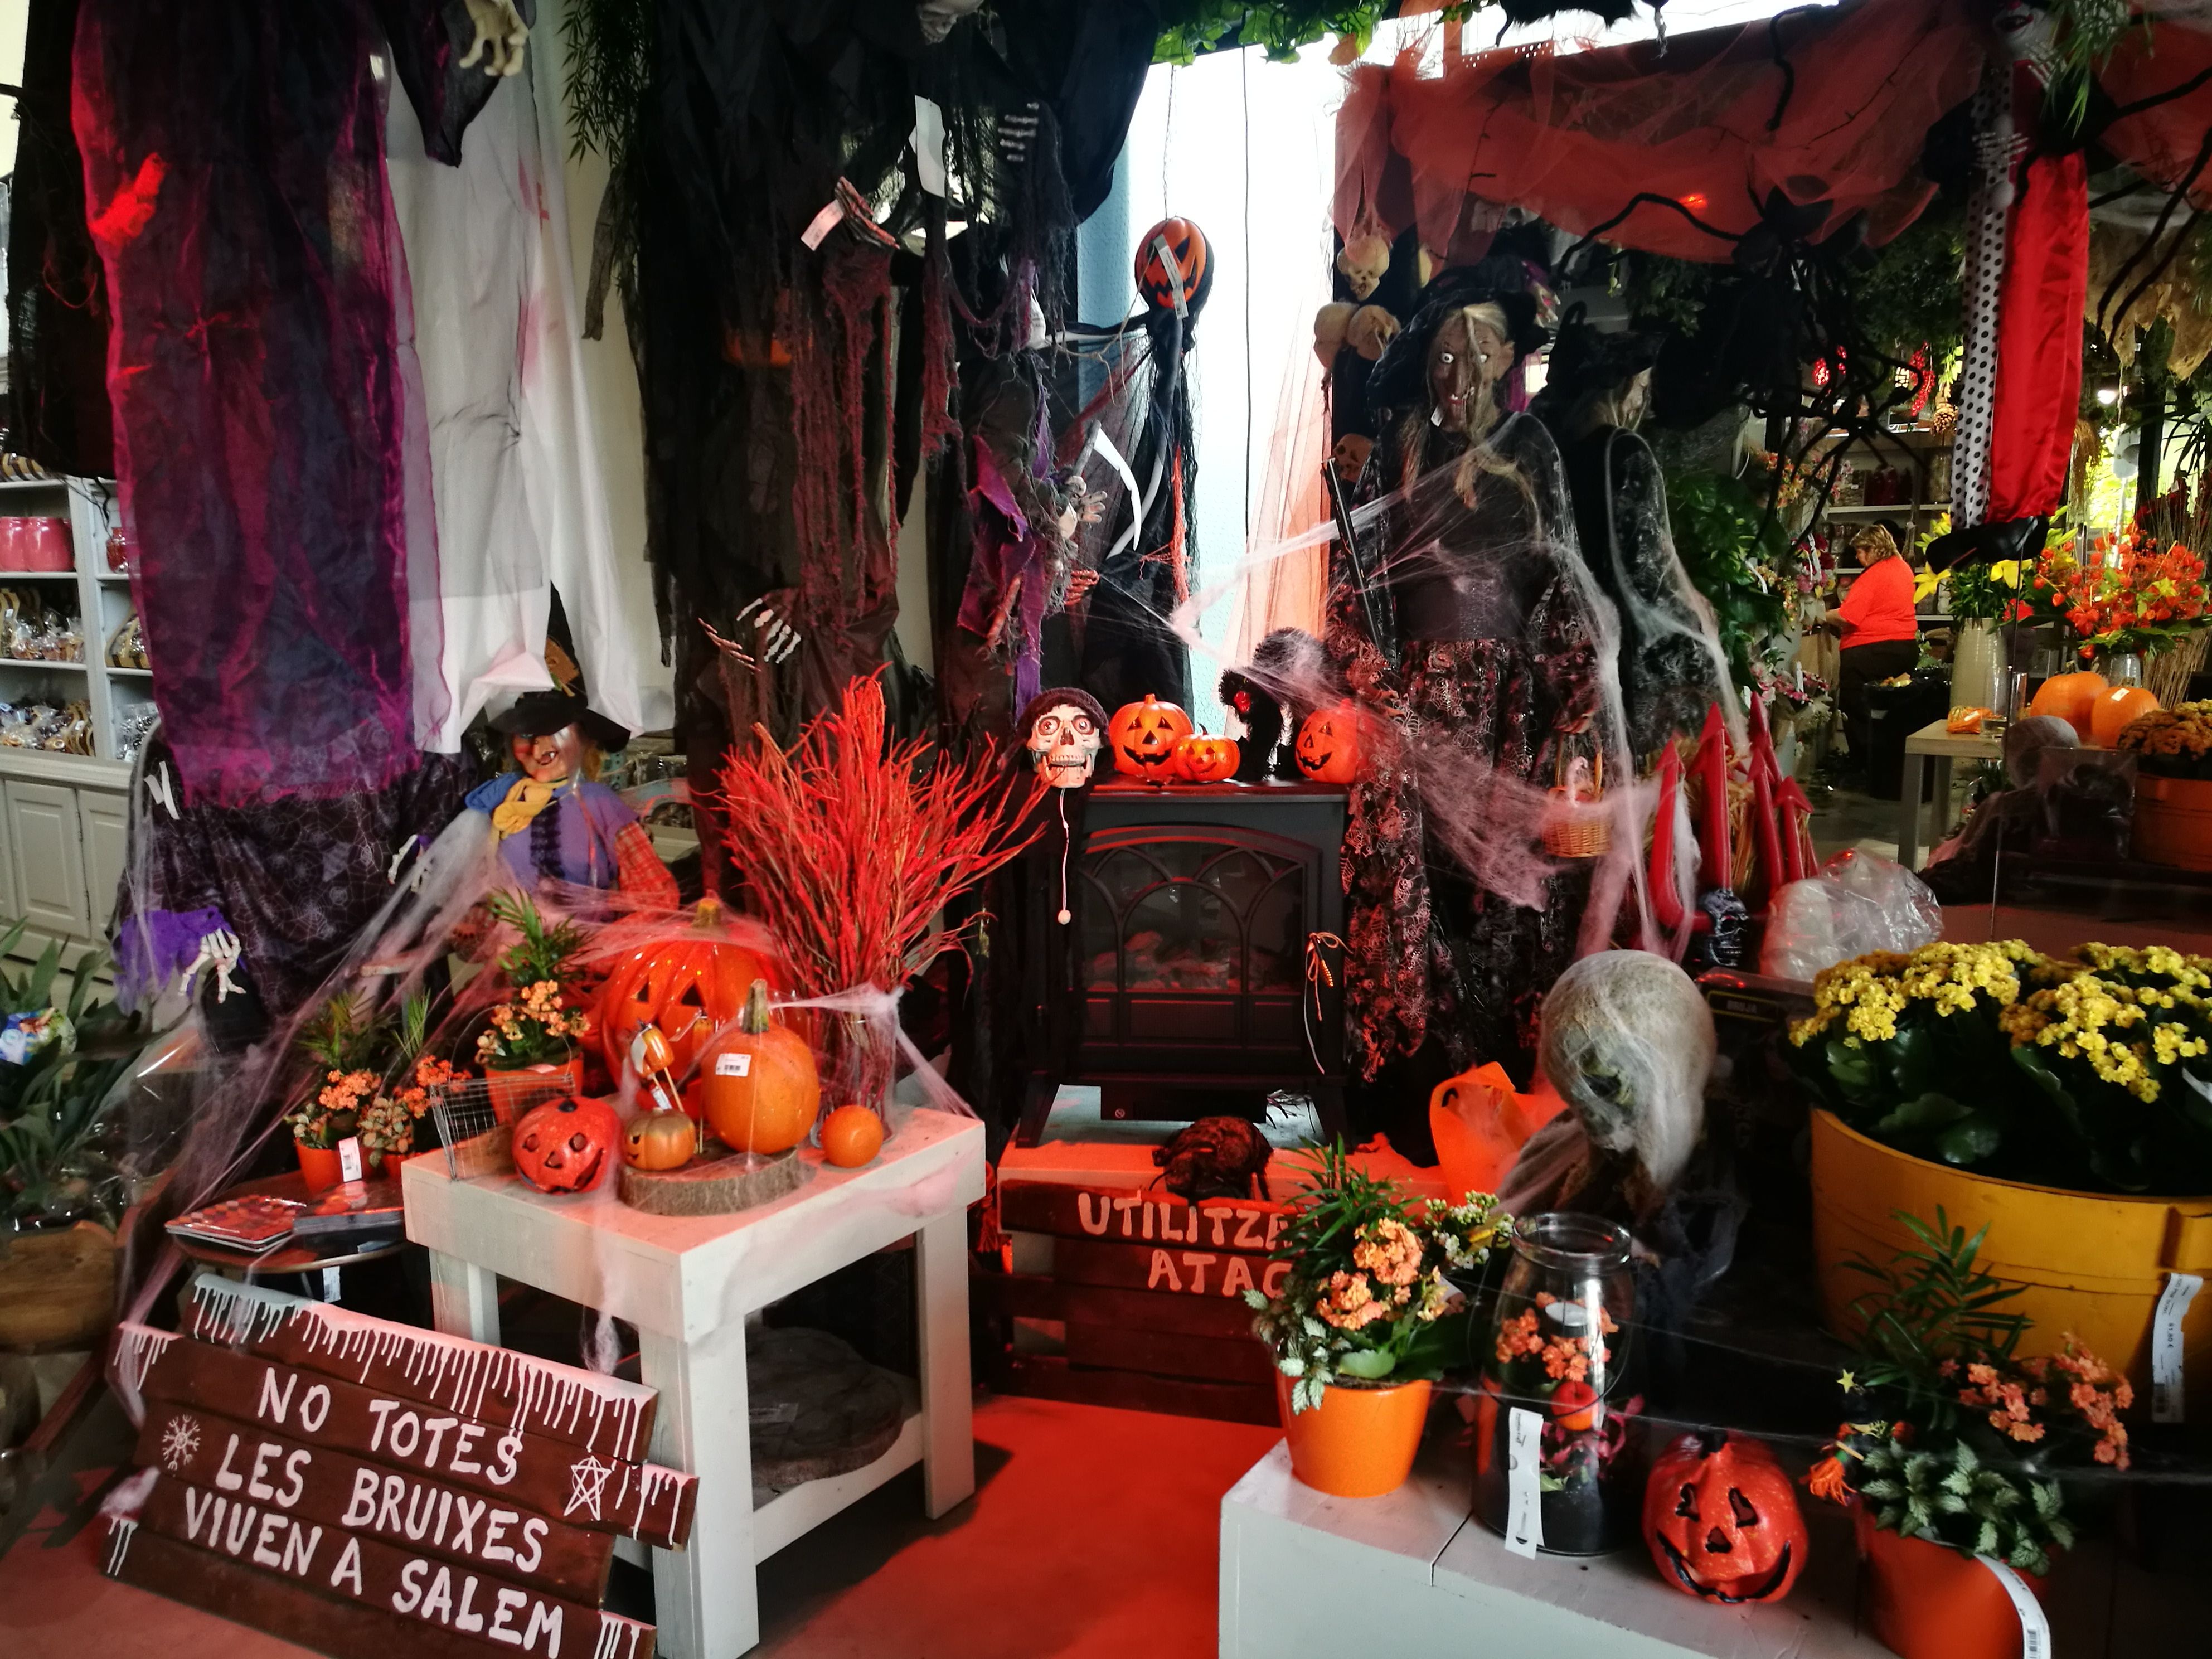 Articles de decoració de Halloween a La Noguera de Rubí. FOTO: Redacció